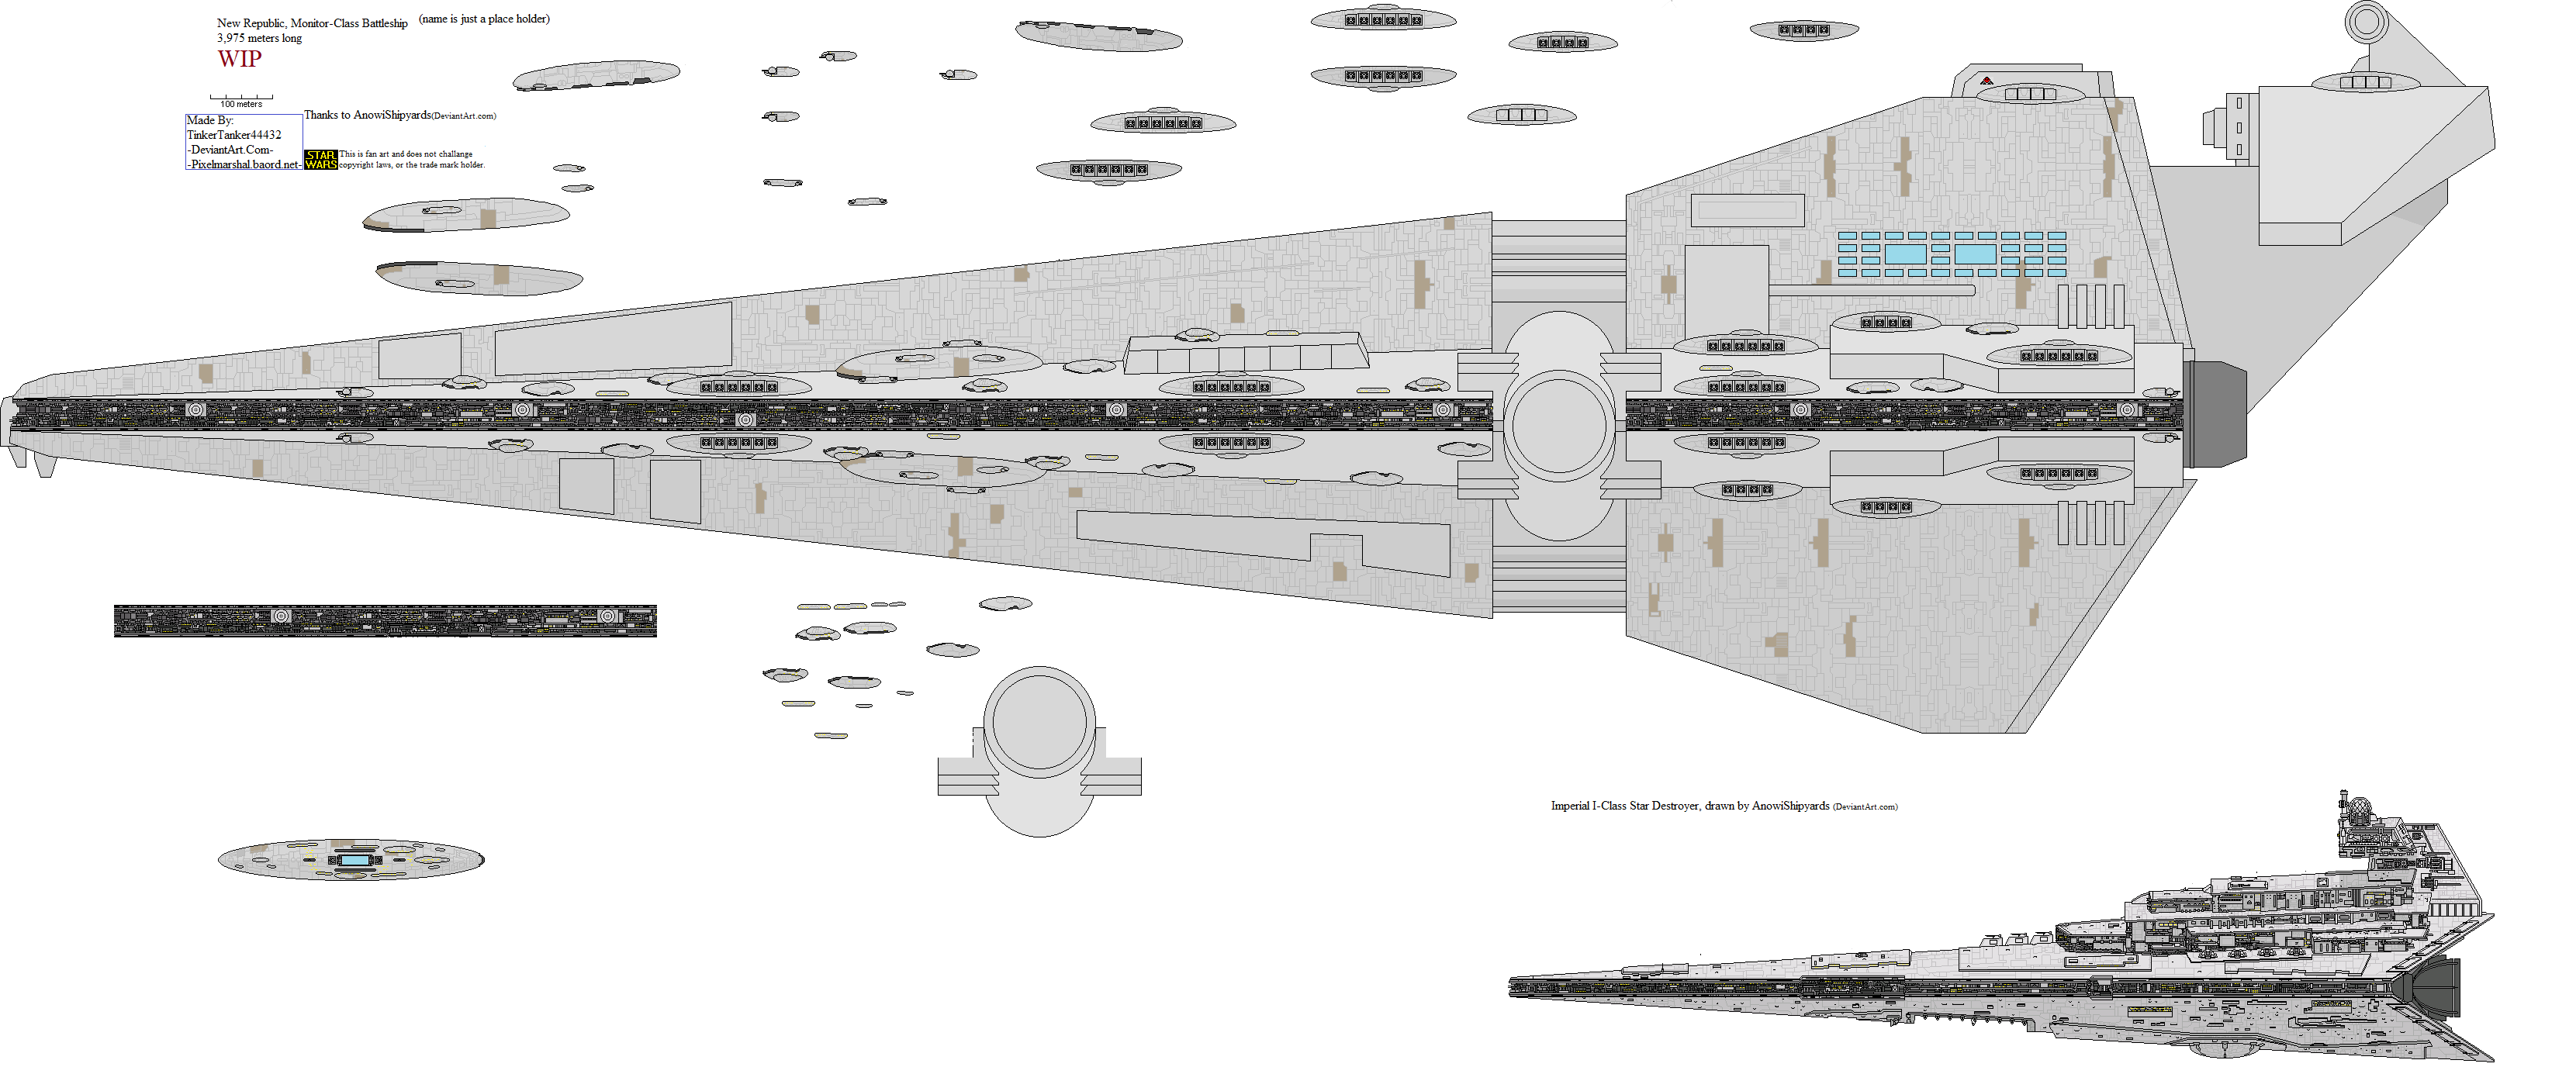 New Republic, Monitor-Class Battleship by TinkerTanker44432 on DeviantArt